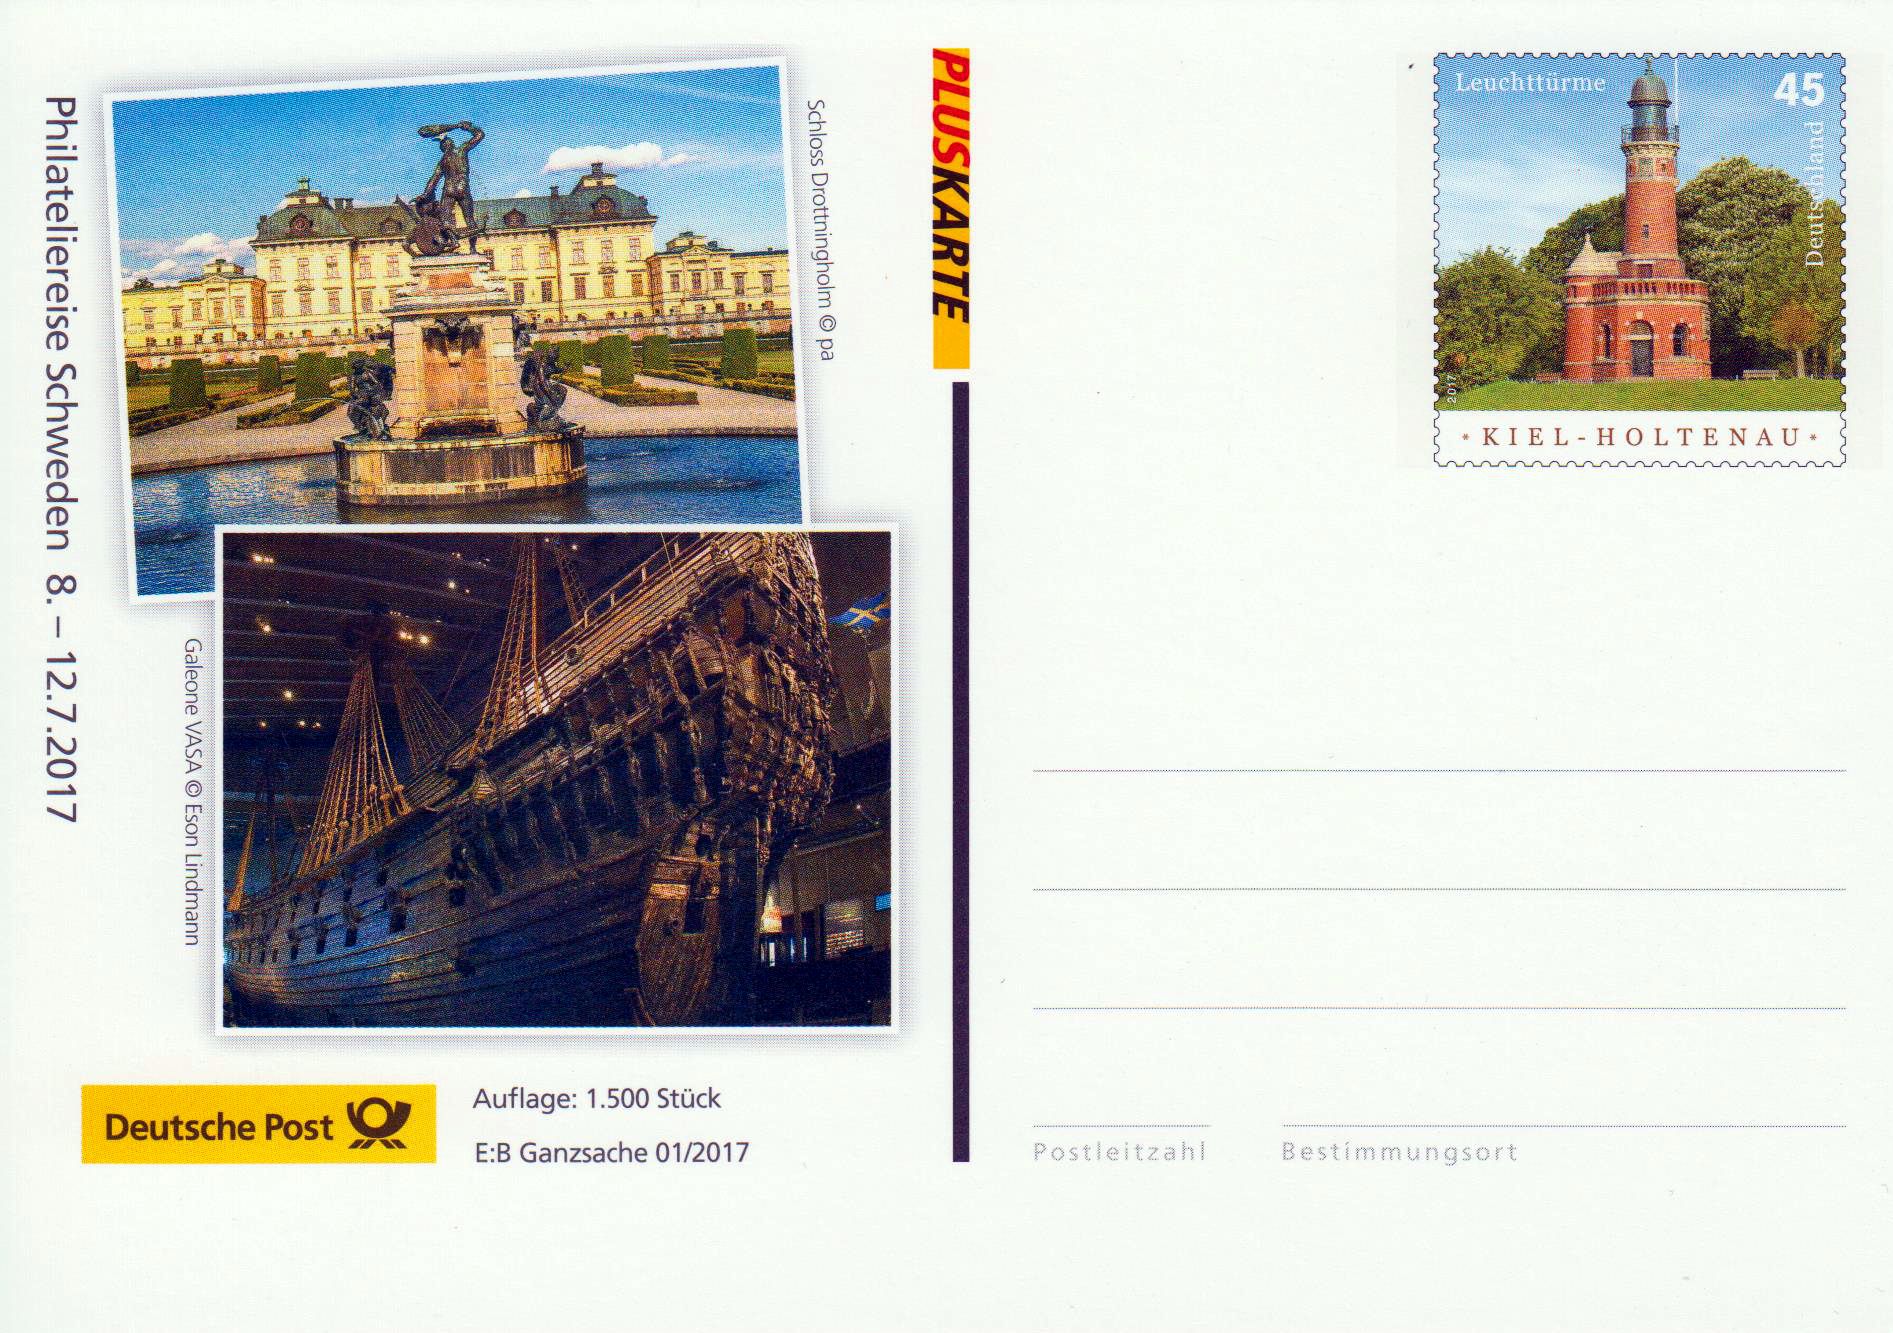 EB-Ganzsache 1/2017: Postkarte Philatelie- reise Schweden 2017, Leuchtturm Kiel-Holtenau